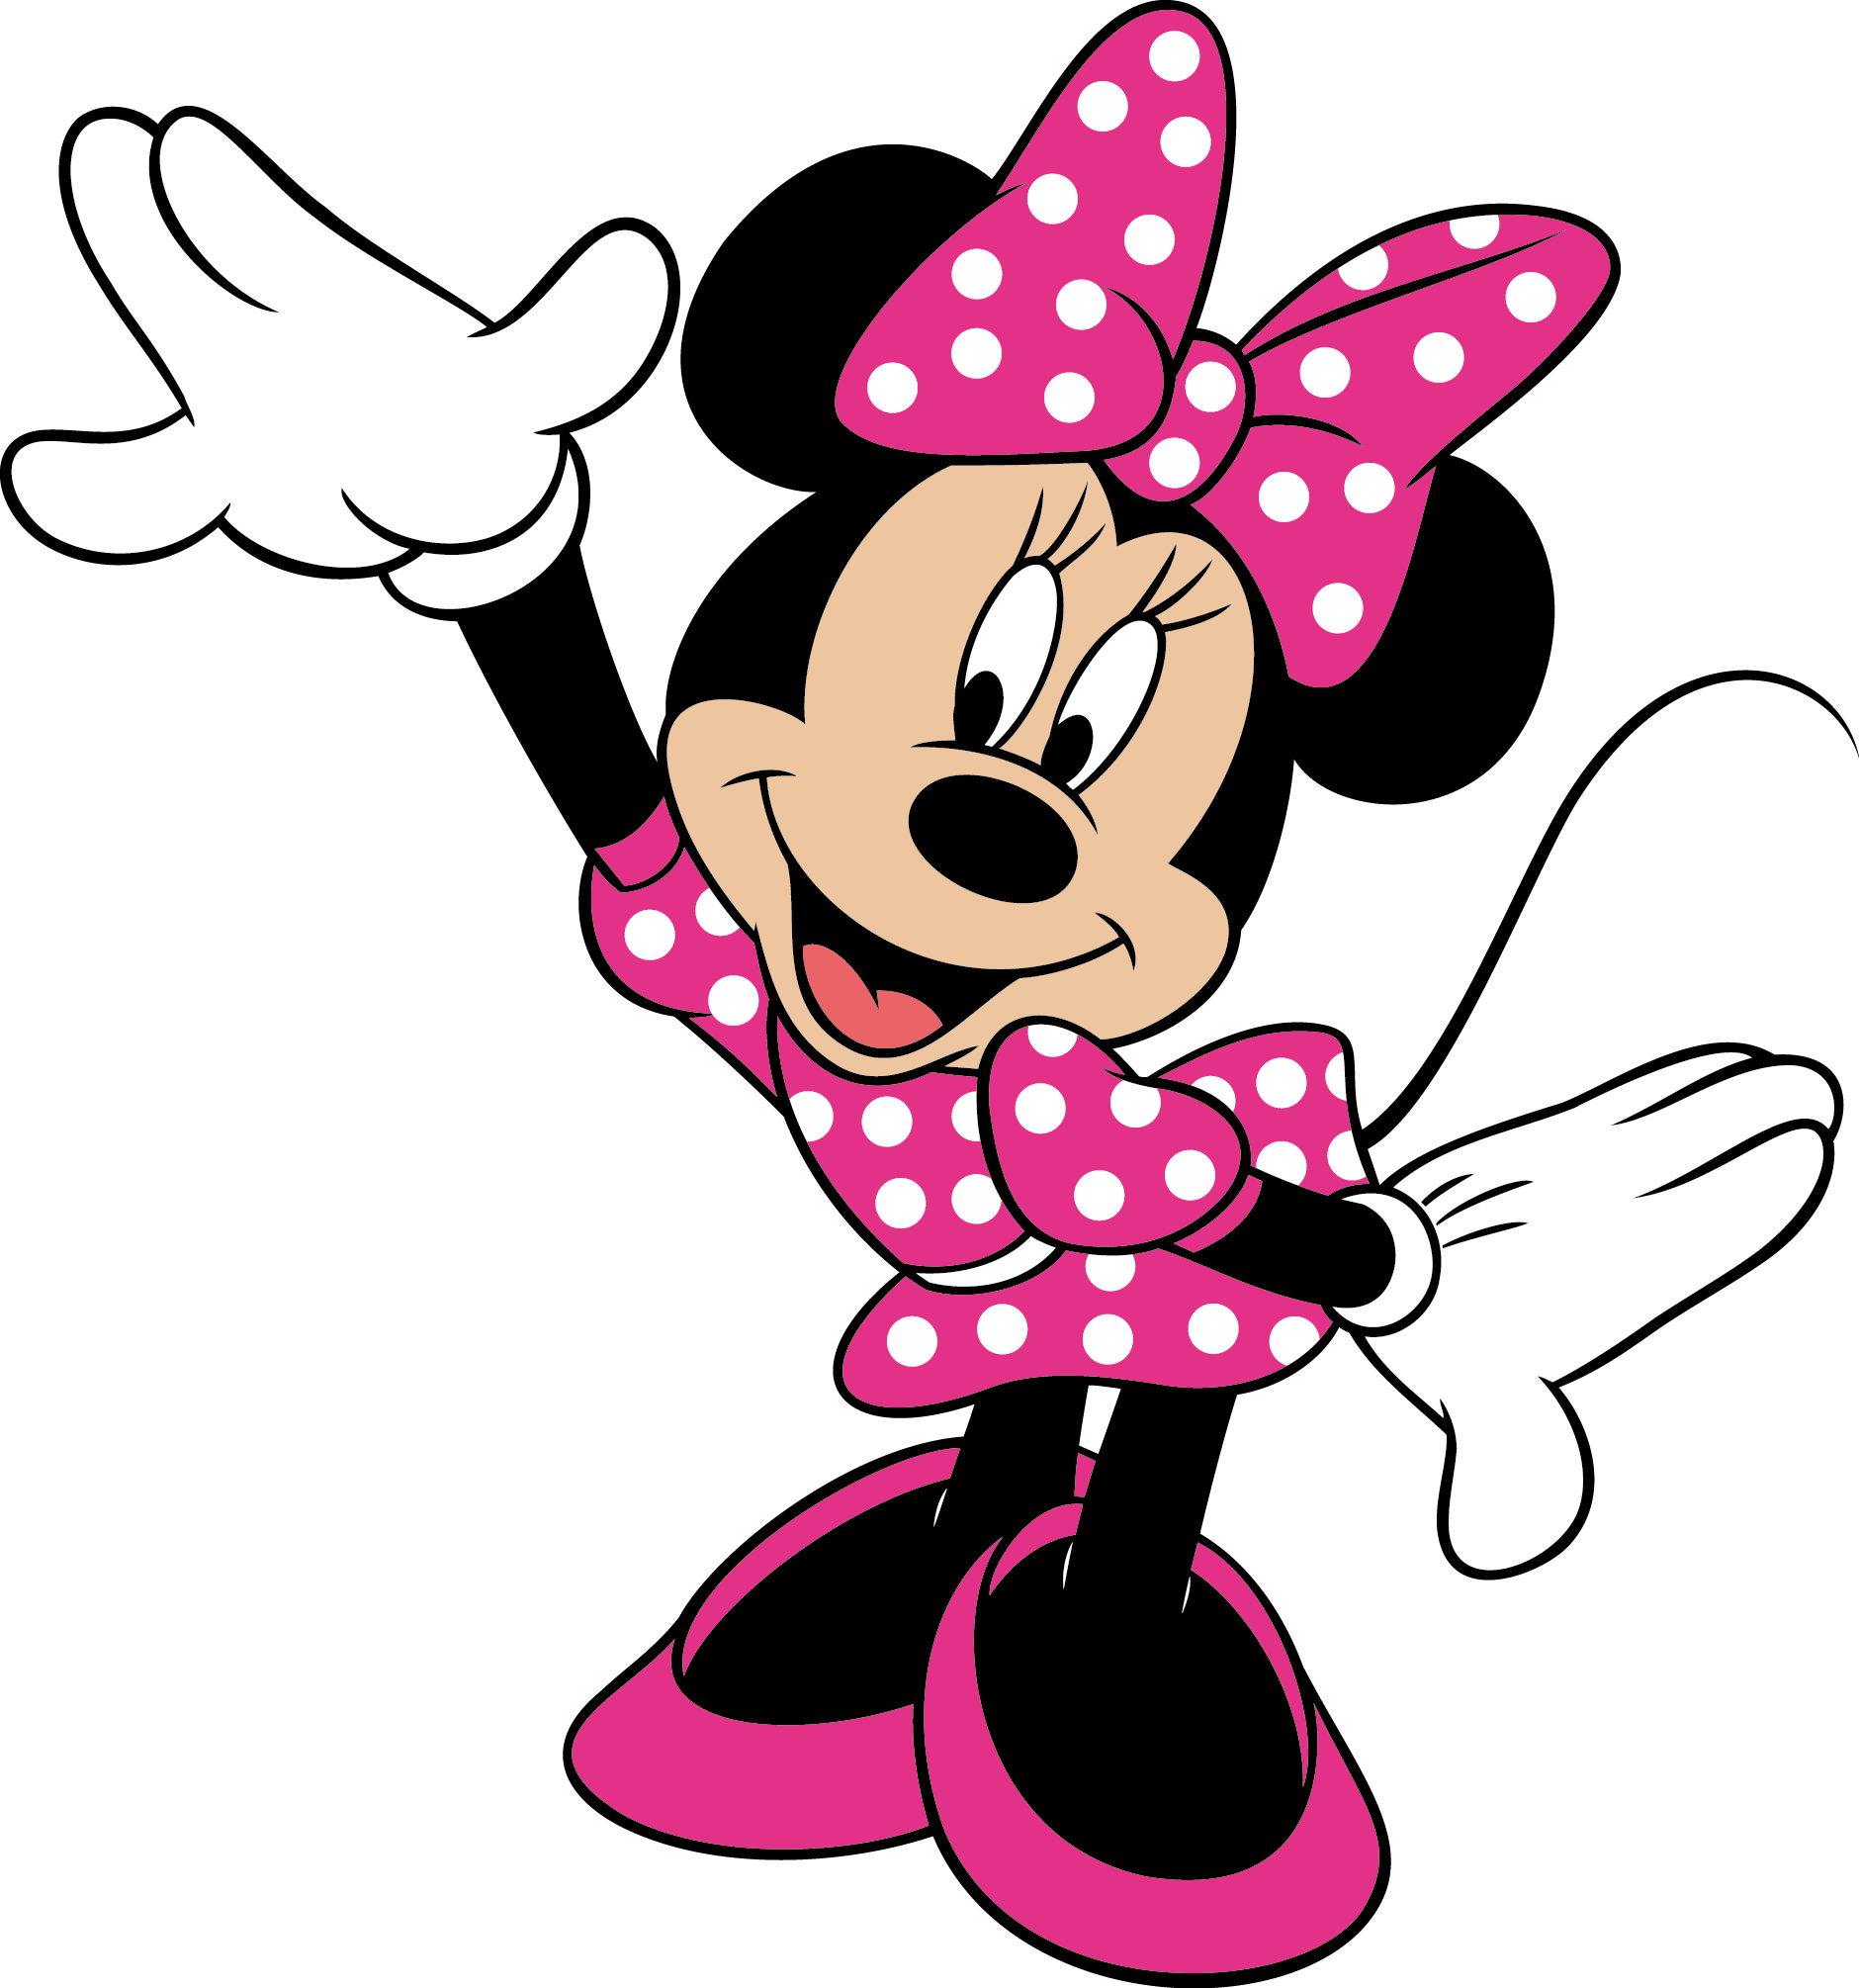 Minnie Mouse Imagenes De Rosa